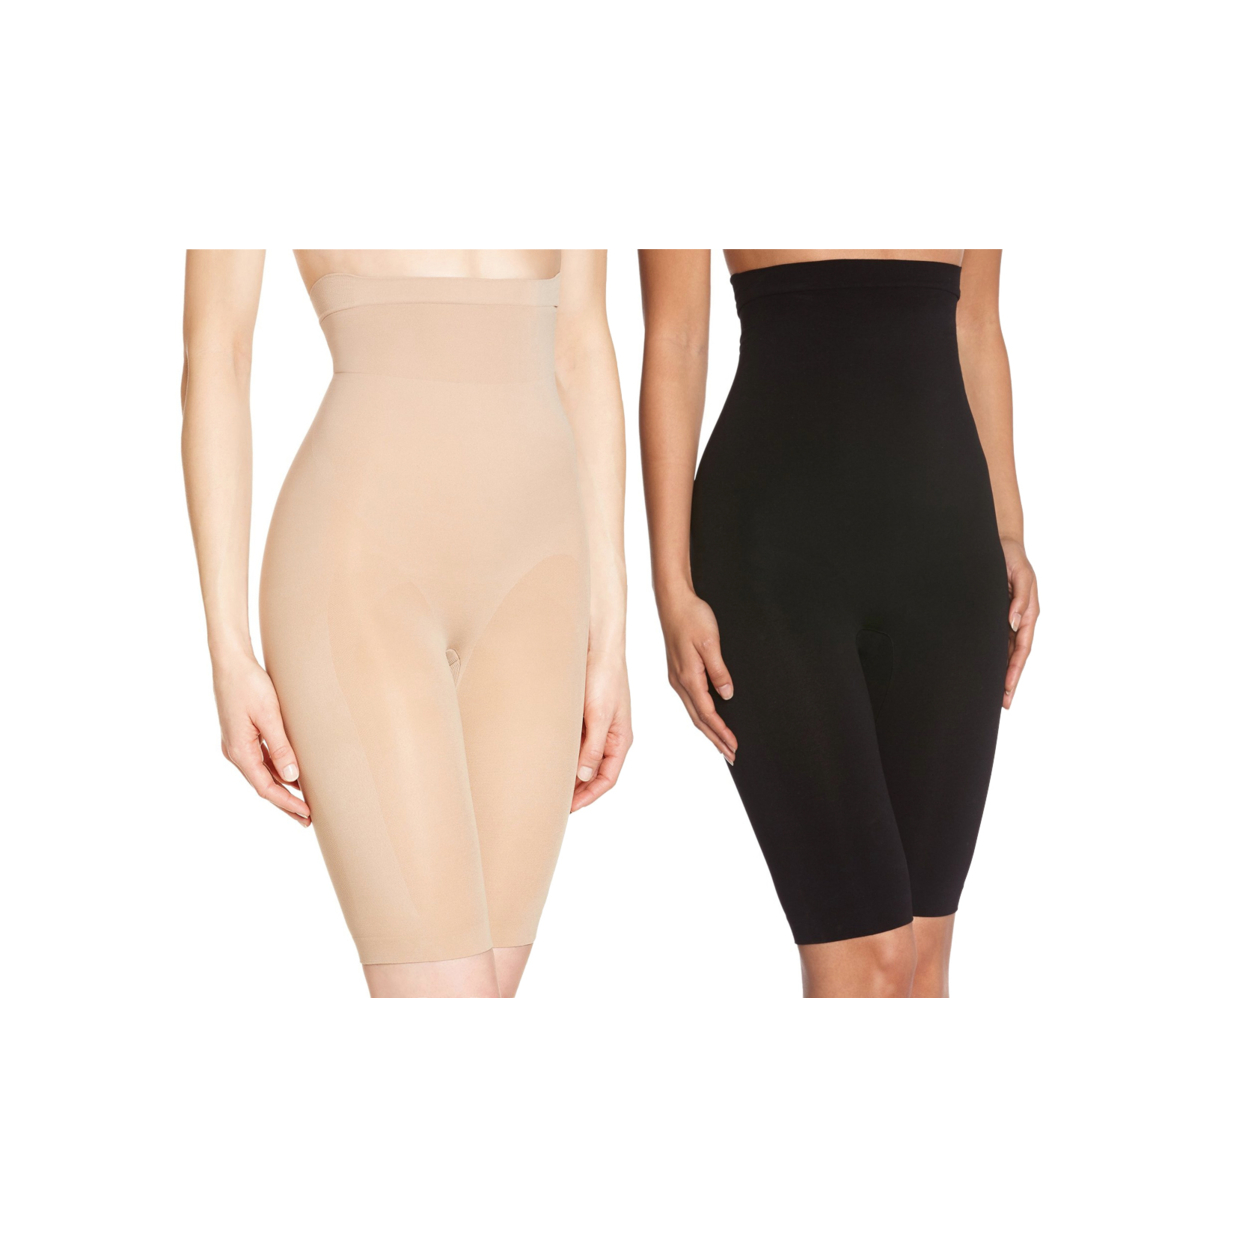 2 Pack Of Women's Long Leg Waist Control Body Shaper - Beige & Black, 2X